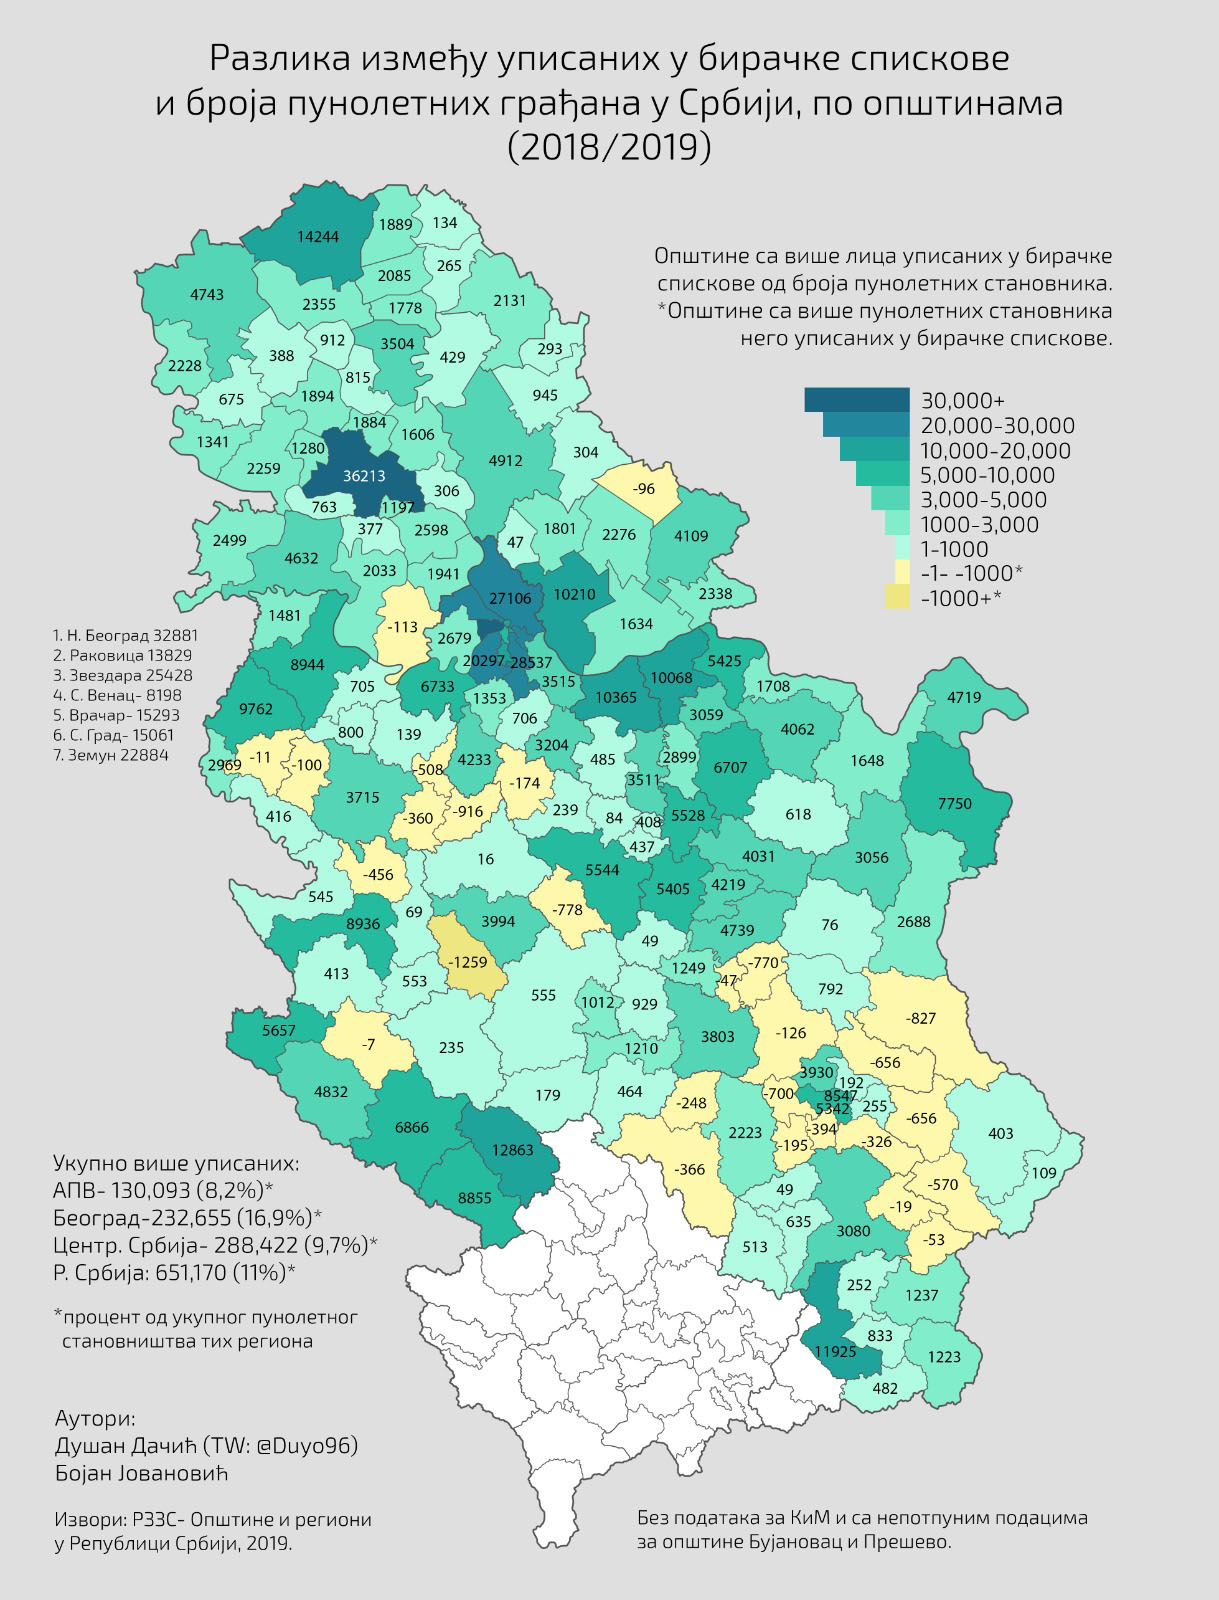 U Srbiji upisano 700.000 više birača od broja stanovnika 2